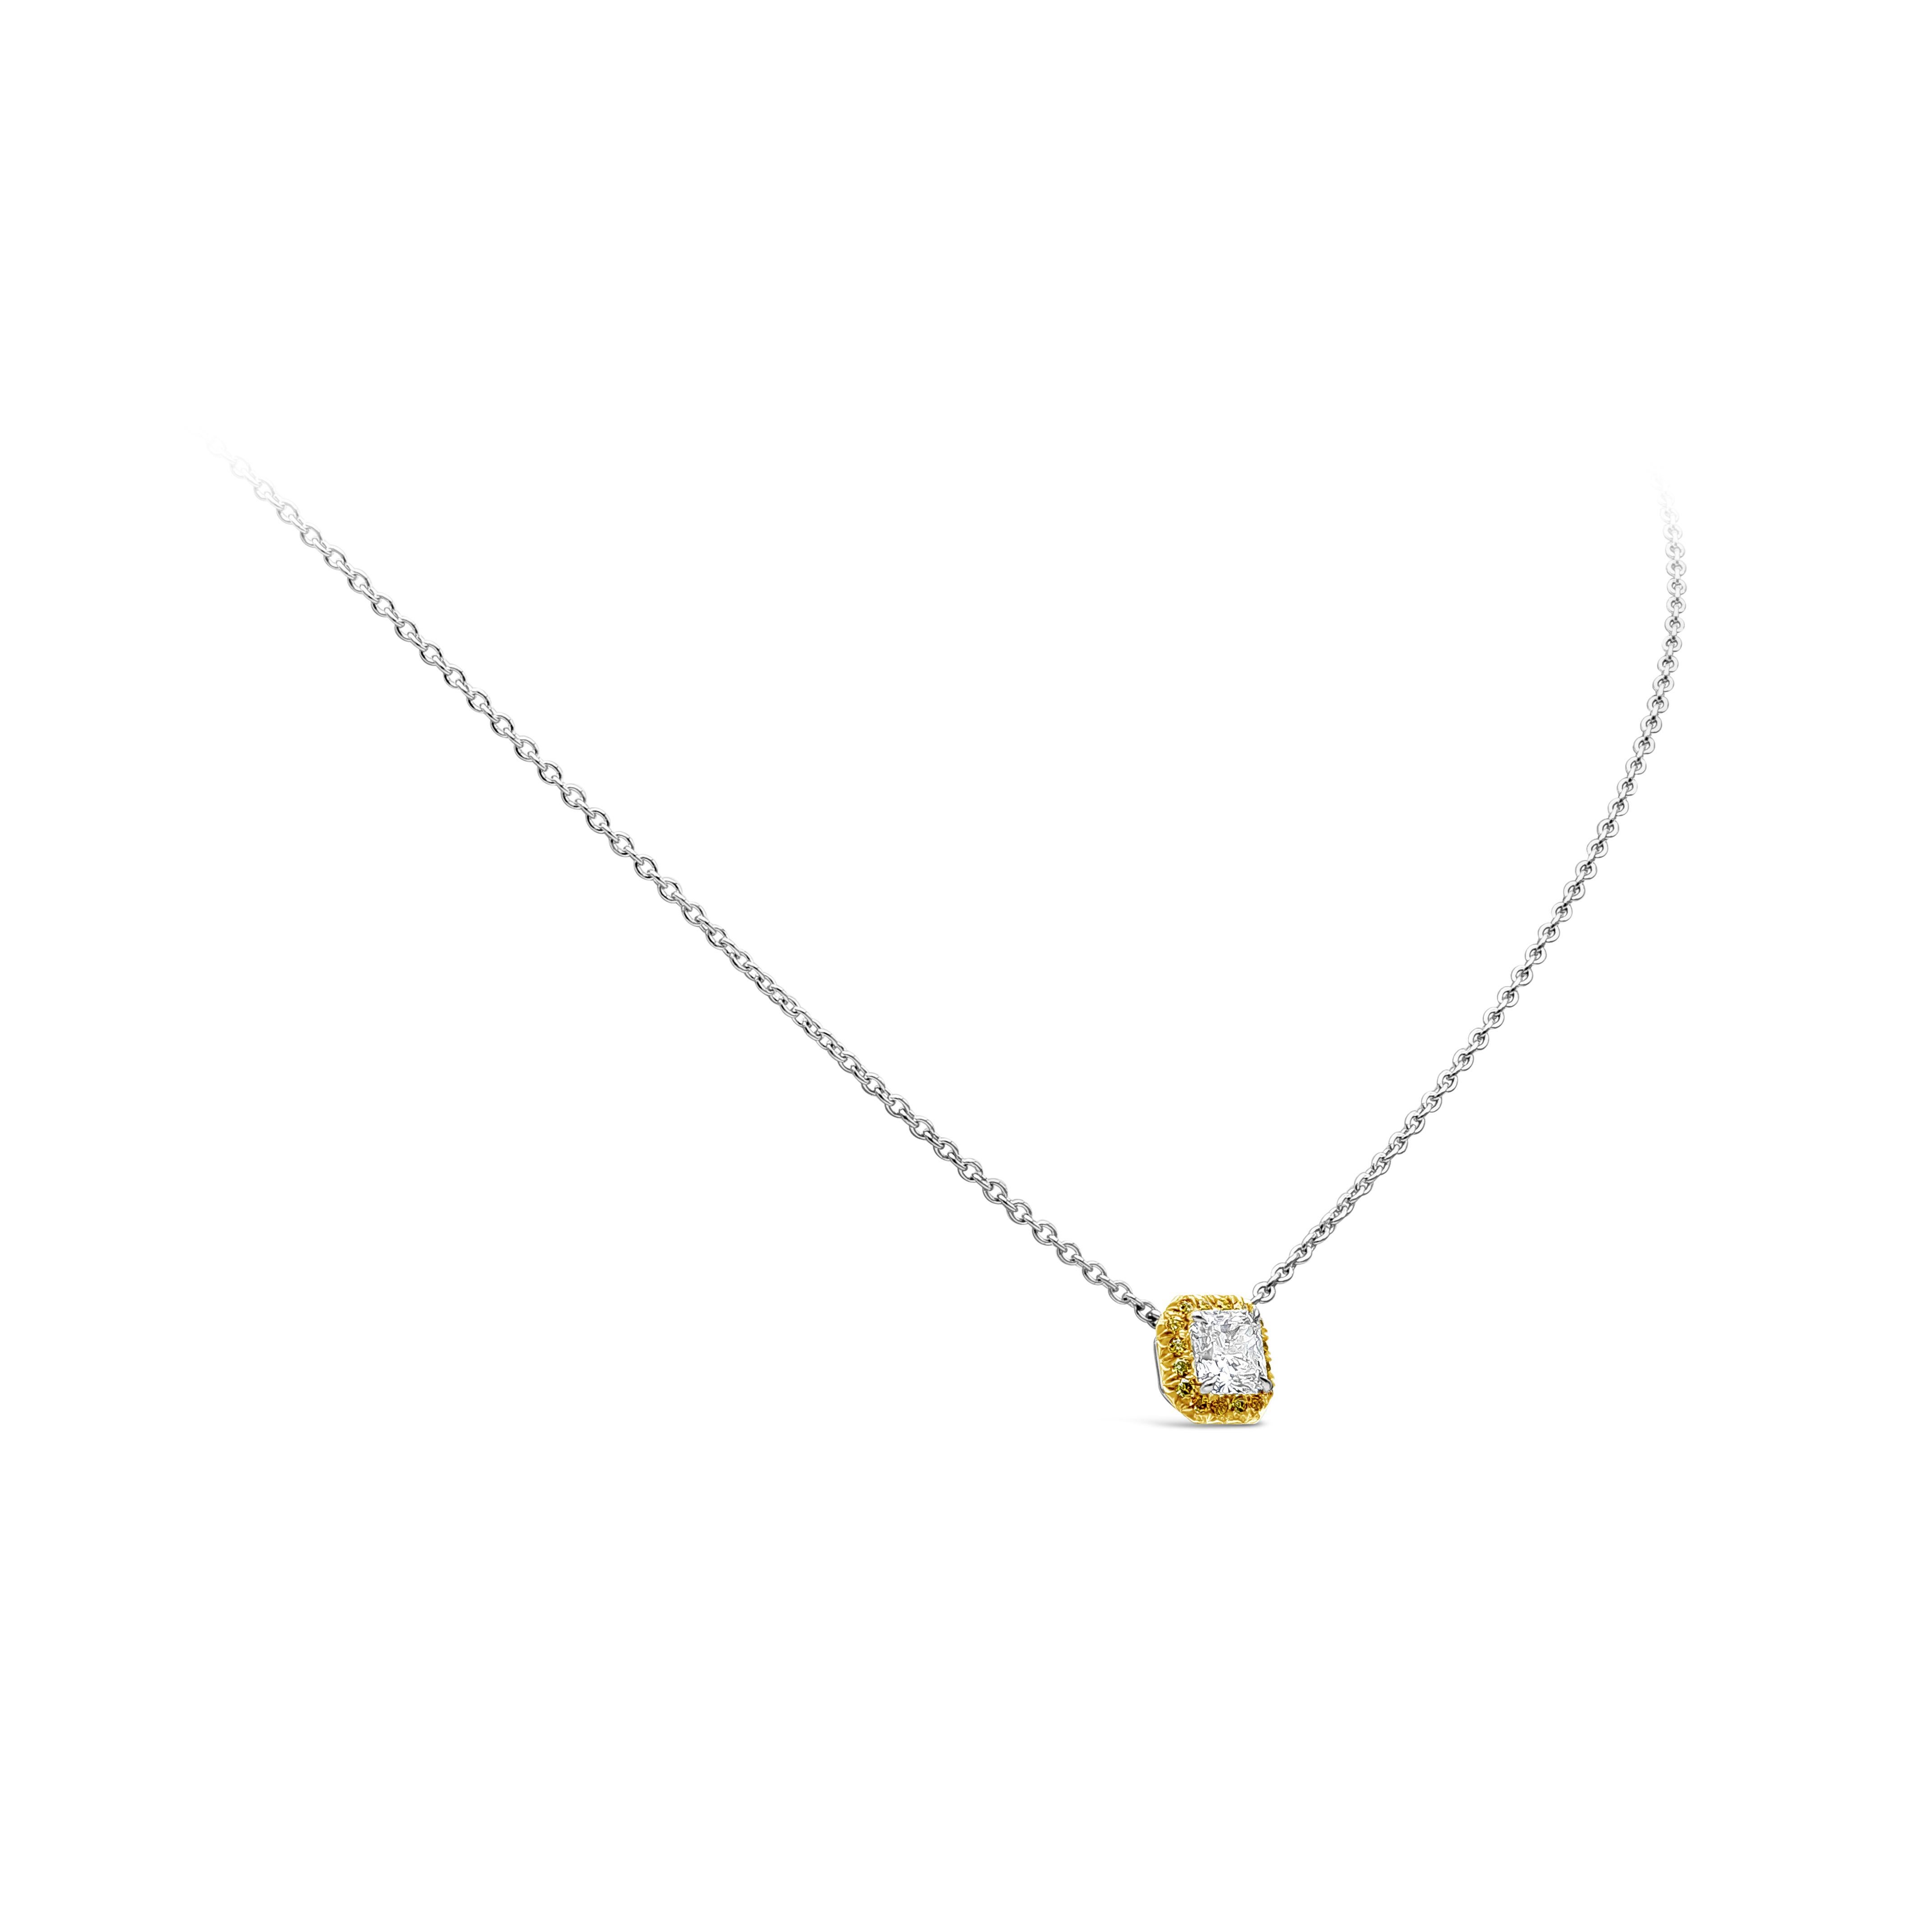 Un collier pendentif simple mettant en valeur un diamant de 0,85 carat de taille radieuse, certifié GIA M-VVS2, serti dans un halo de diamant jaune vif de 0,17 carat de taille brillante. Fabriqué en platine.

Ce modèle est assorti d'une boucle